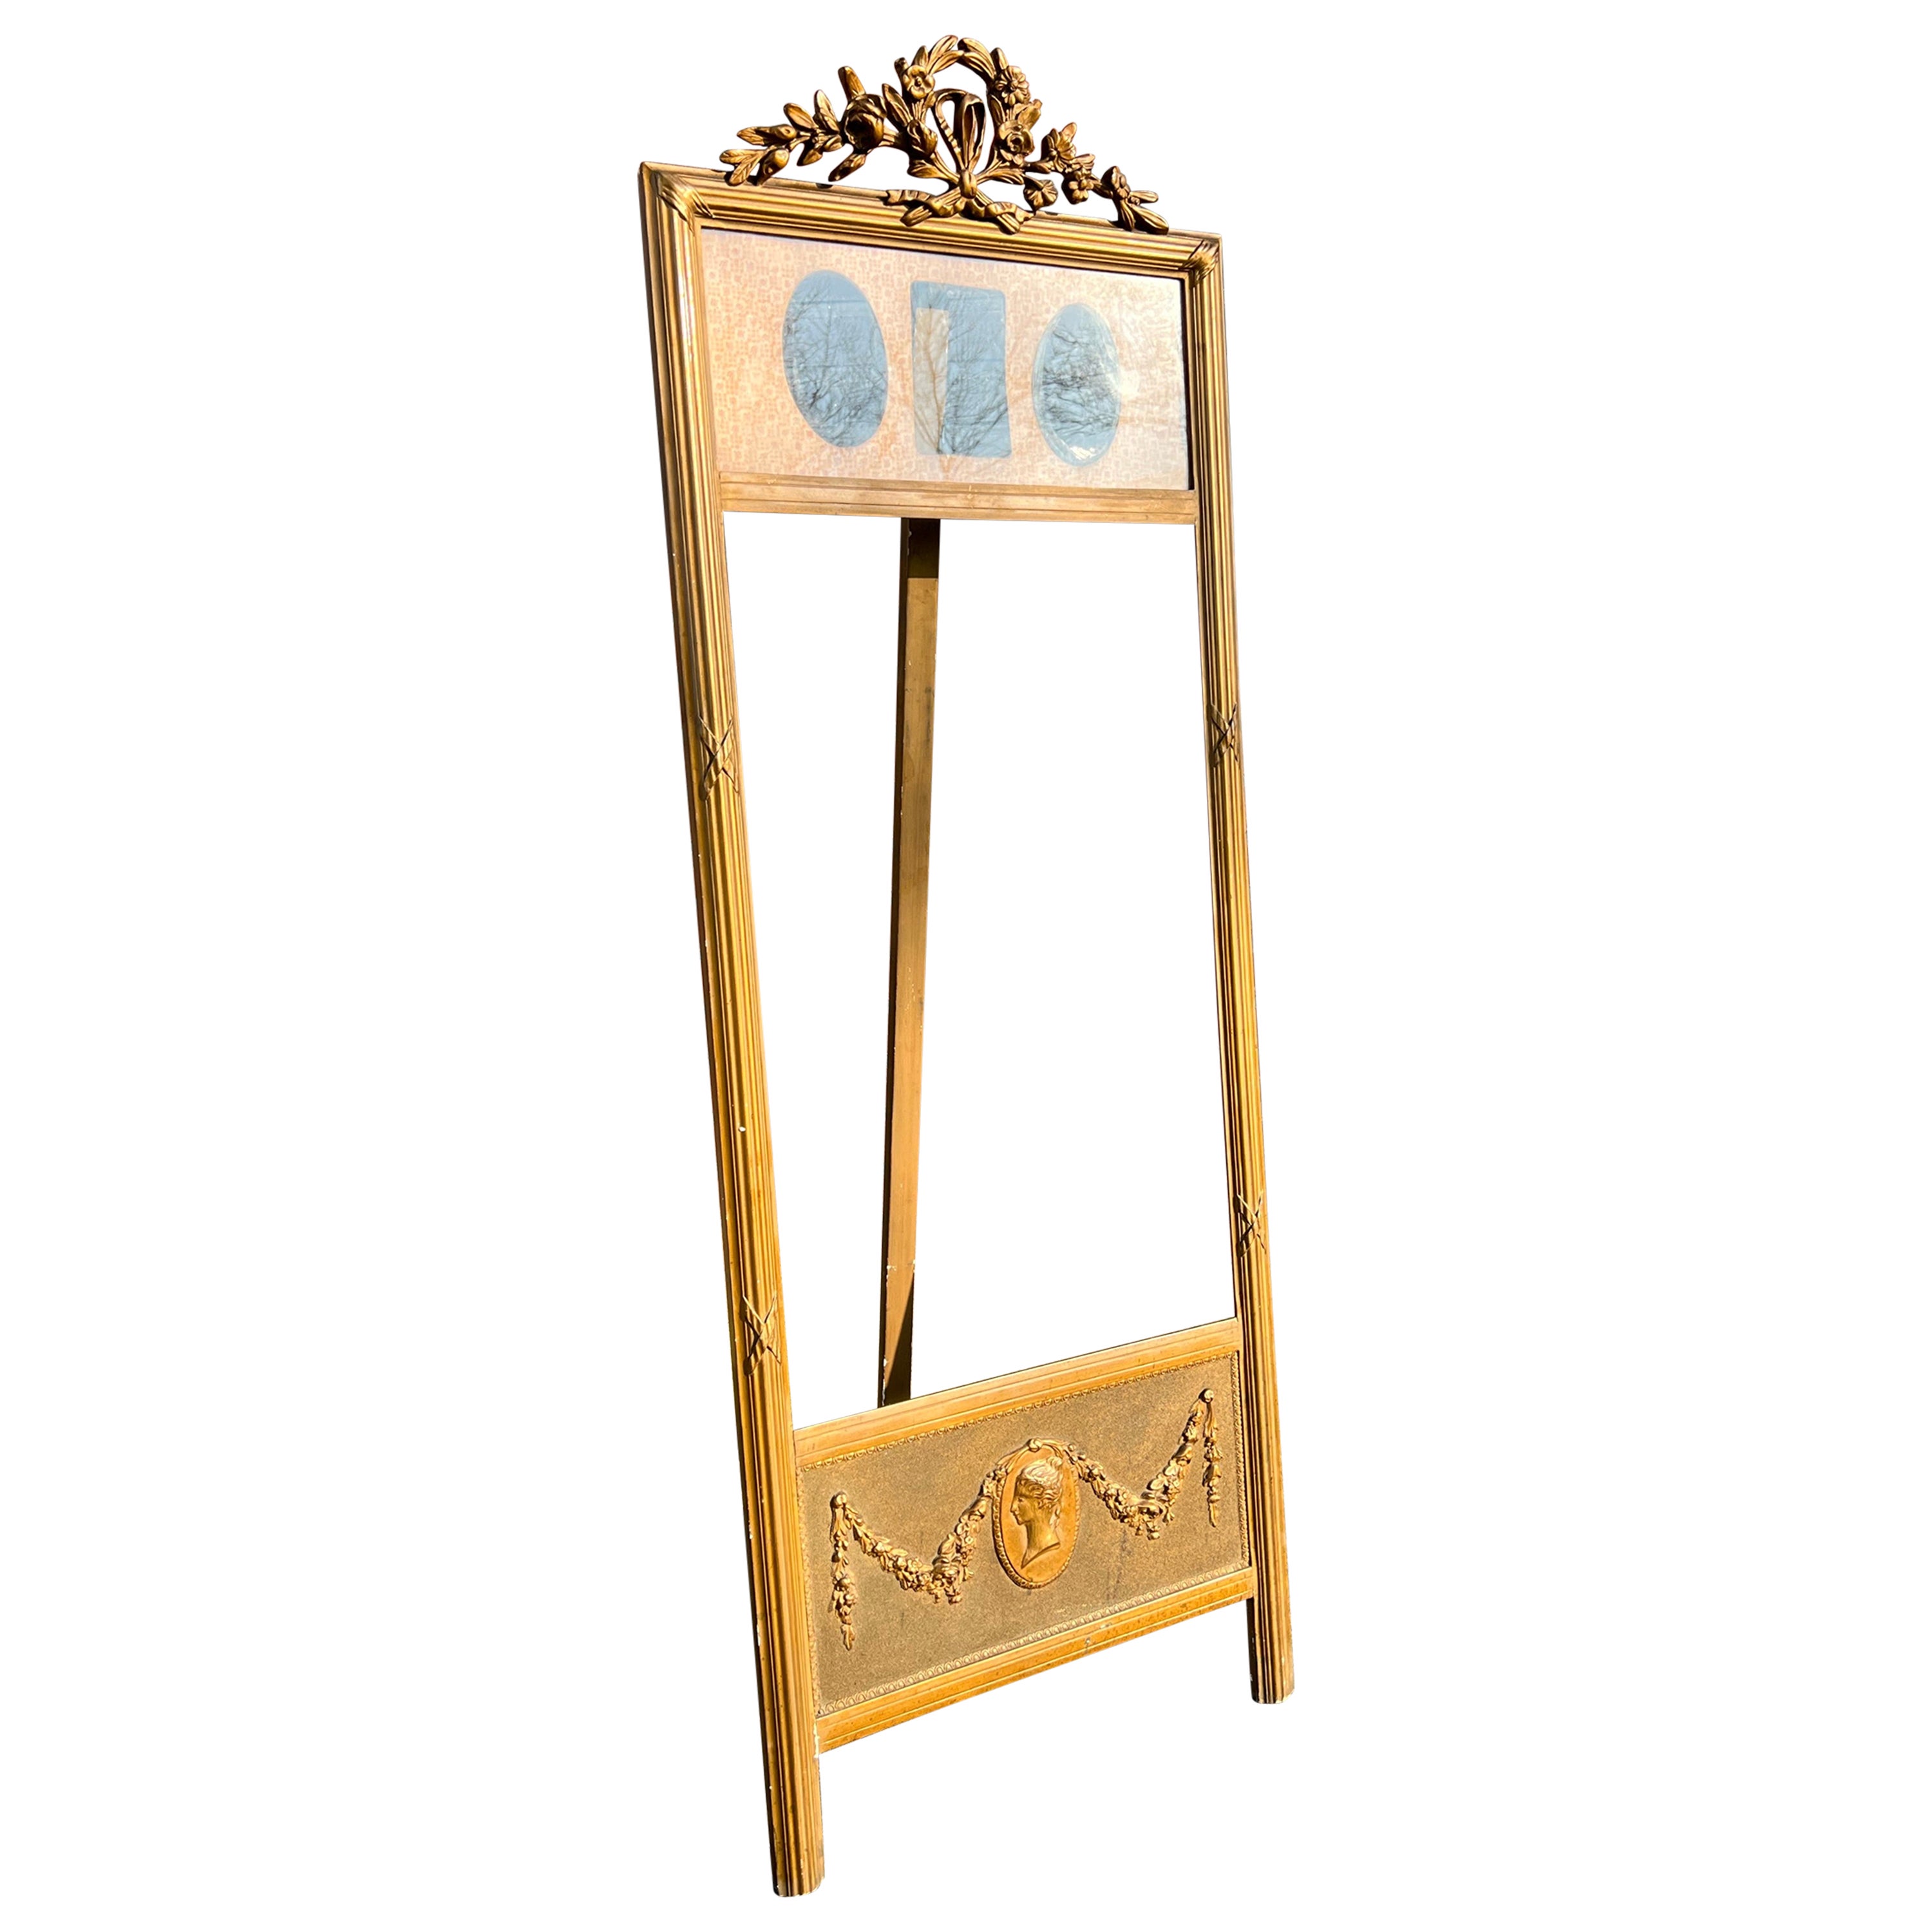 Seltene antike vergoldete Holz-Spiegel- oder Bilder-Stehlampe/Vitrinenständer, 1900er Jahre